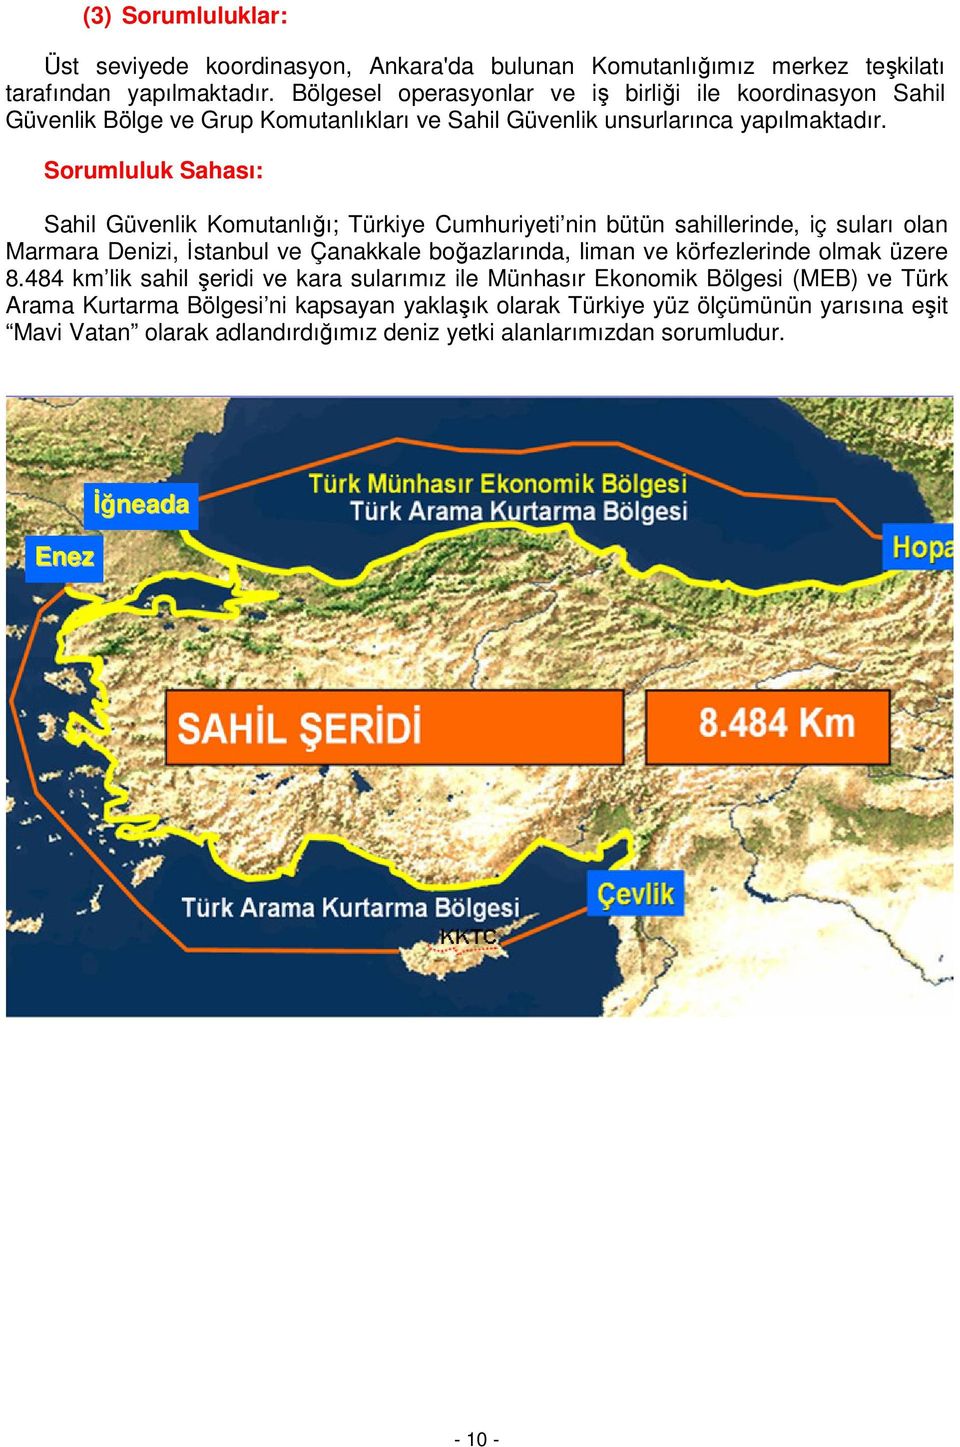 Sorumluluk Sahası: Sahil Güvenlik Komutanlığı; Türkiye Cumhuriyeti nin bütün sahillerinde, iç suları olan Marmara Denizi, İstanbul ve Çanakkale boğazlarında, liman ve körfezlerinde